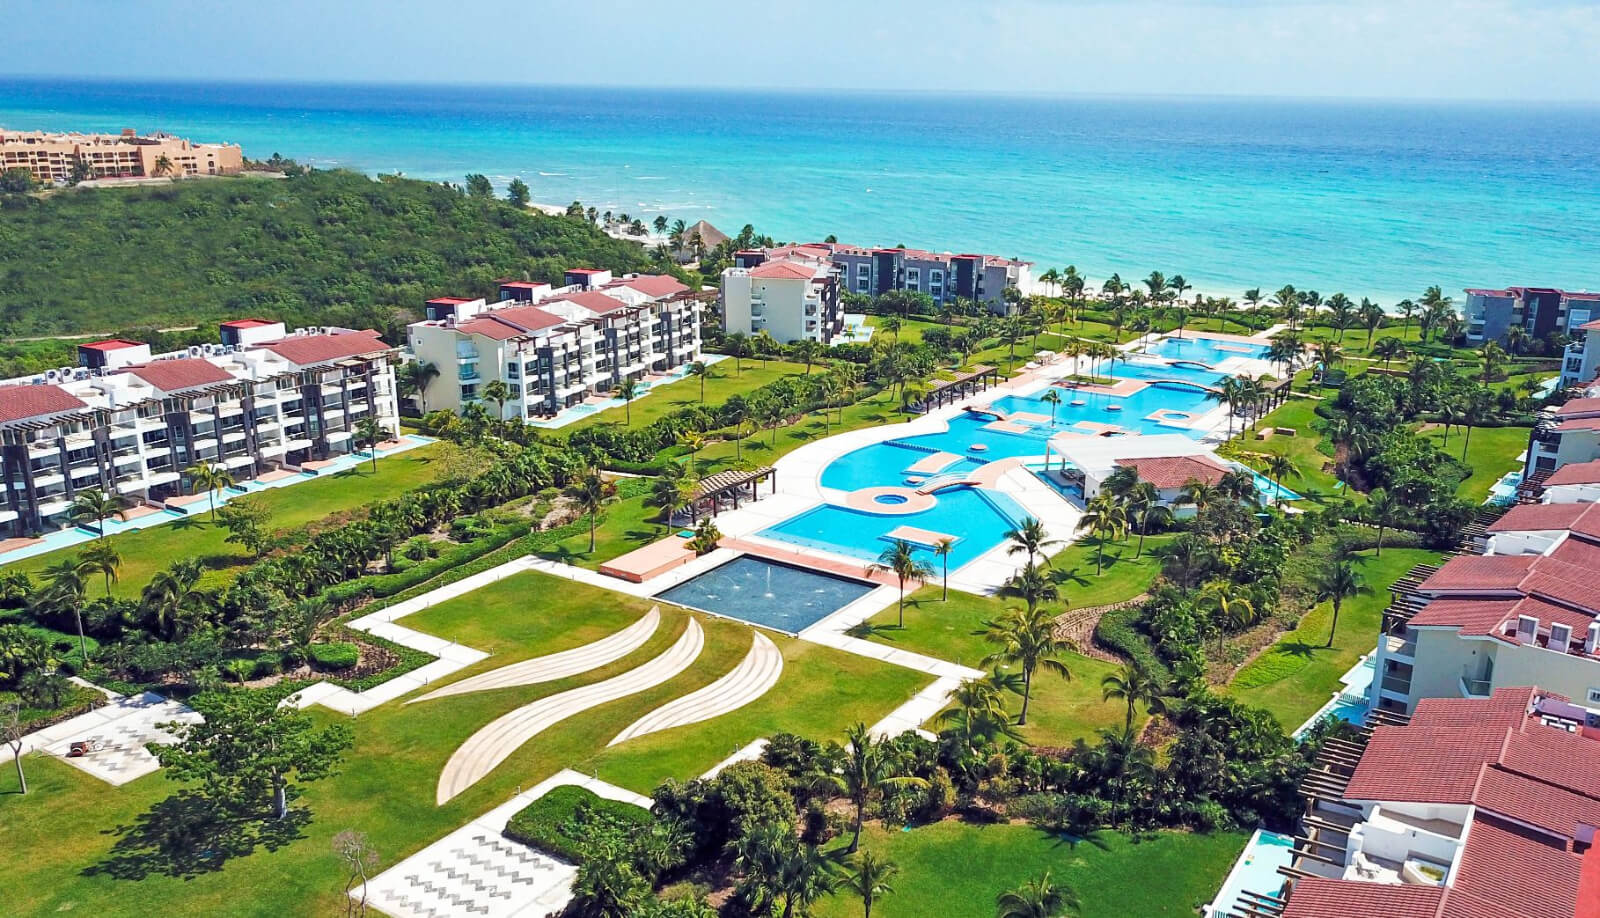 Condo for sale worh beach club, golf, pool, in Corasol, Playa del Carmen.